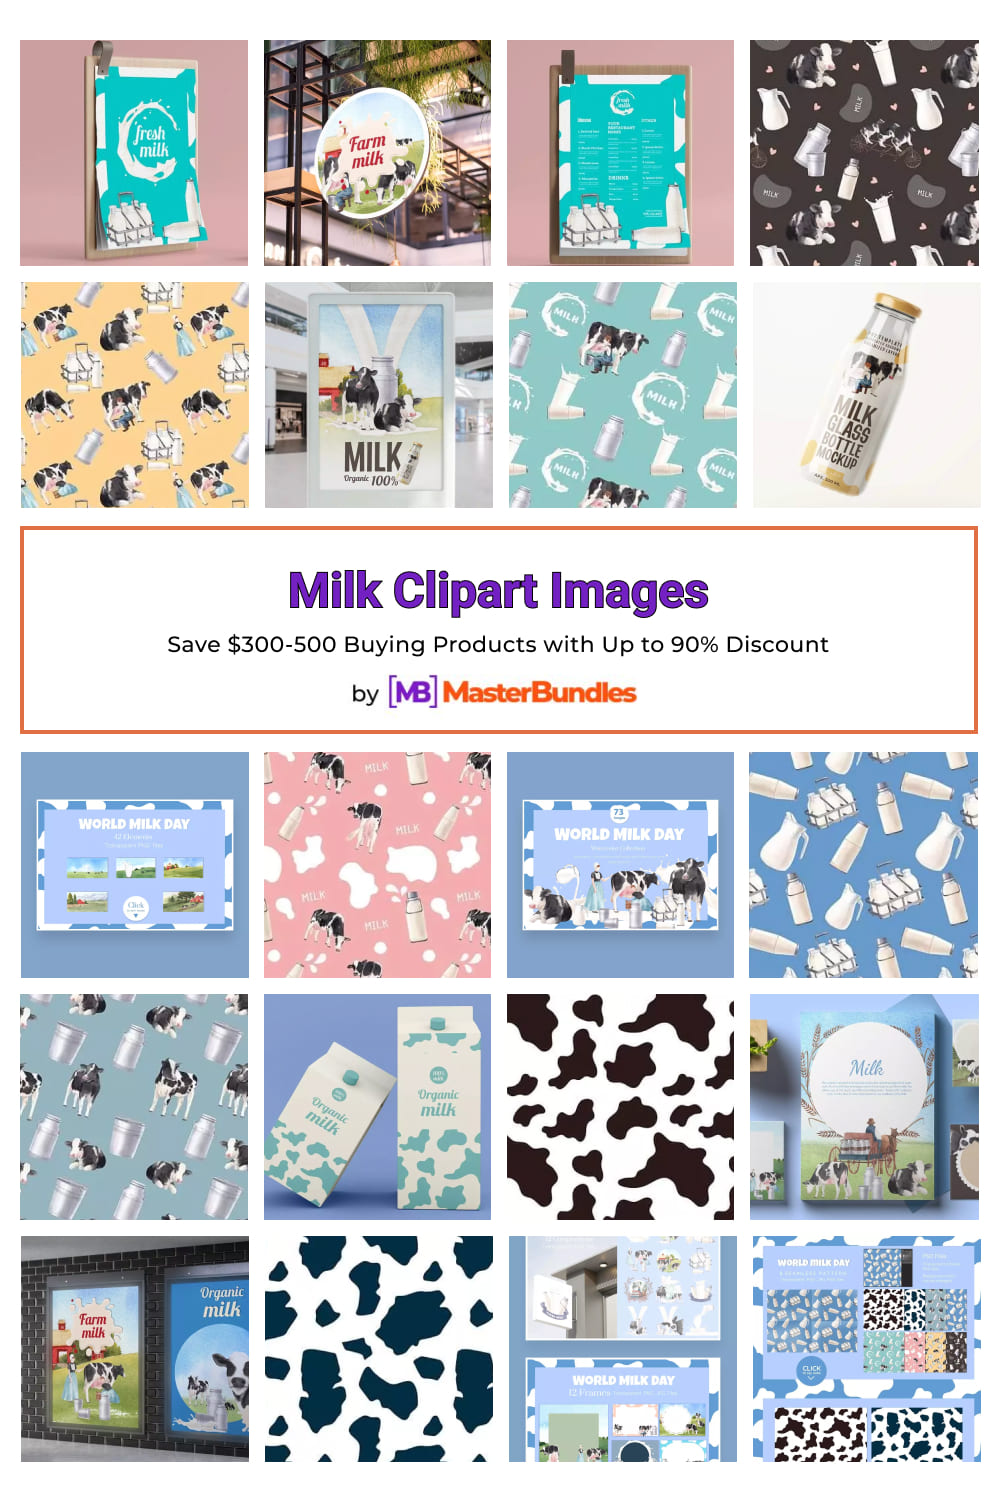 Milk Clipart Images Pinterest image.